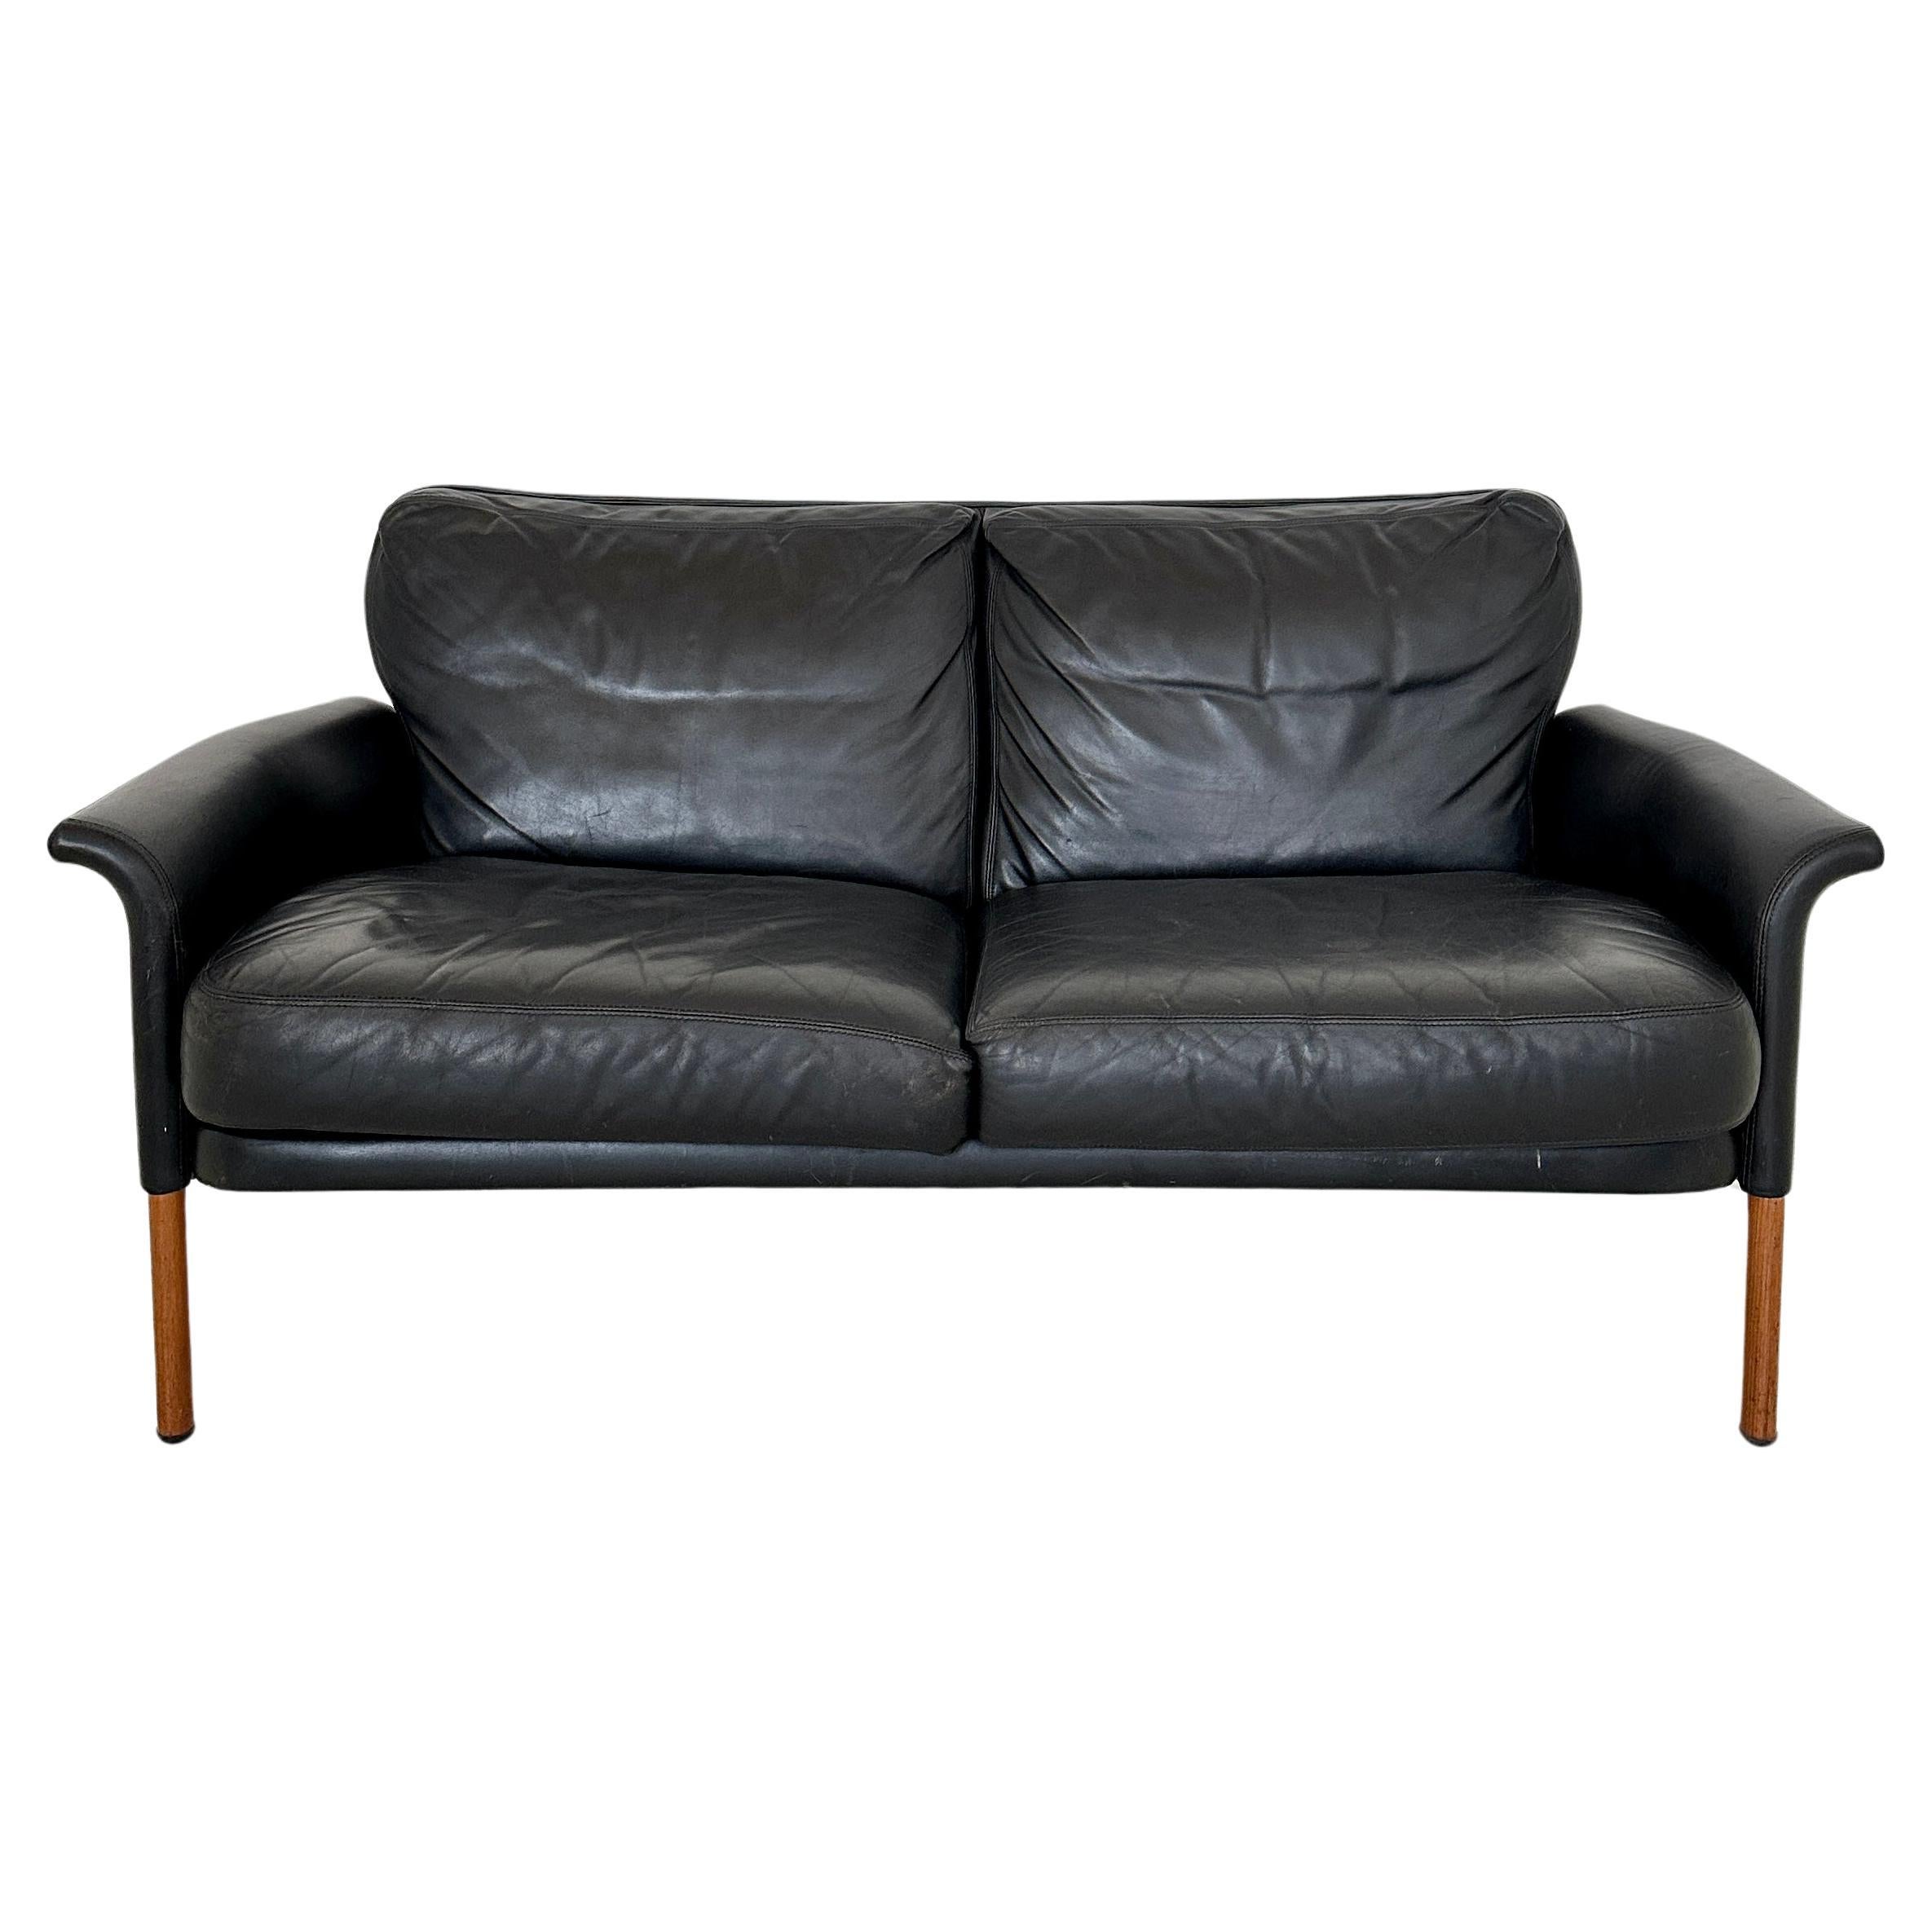 Ce magnifique canapé en cuir 2 places de Hans Olsen a été fabriqué au Danemark dans les années 1960.
Une pièce unique qui attirera tous les regards dans votre intérieur antique, moderne, space age ou mid-century.
Si vous avez d'autres questions,